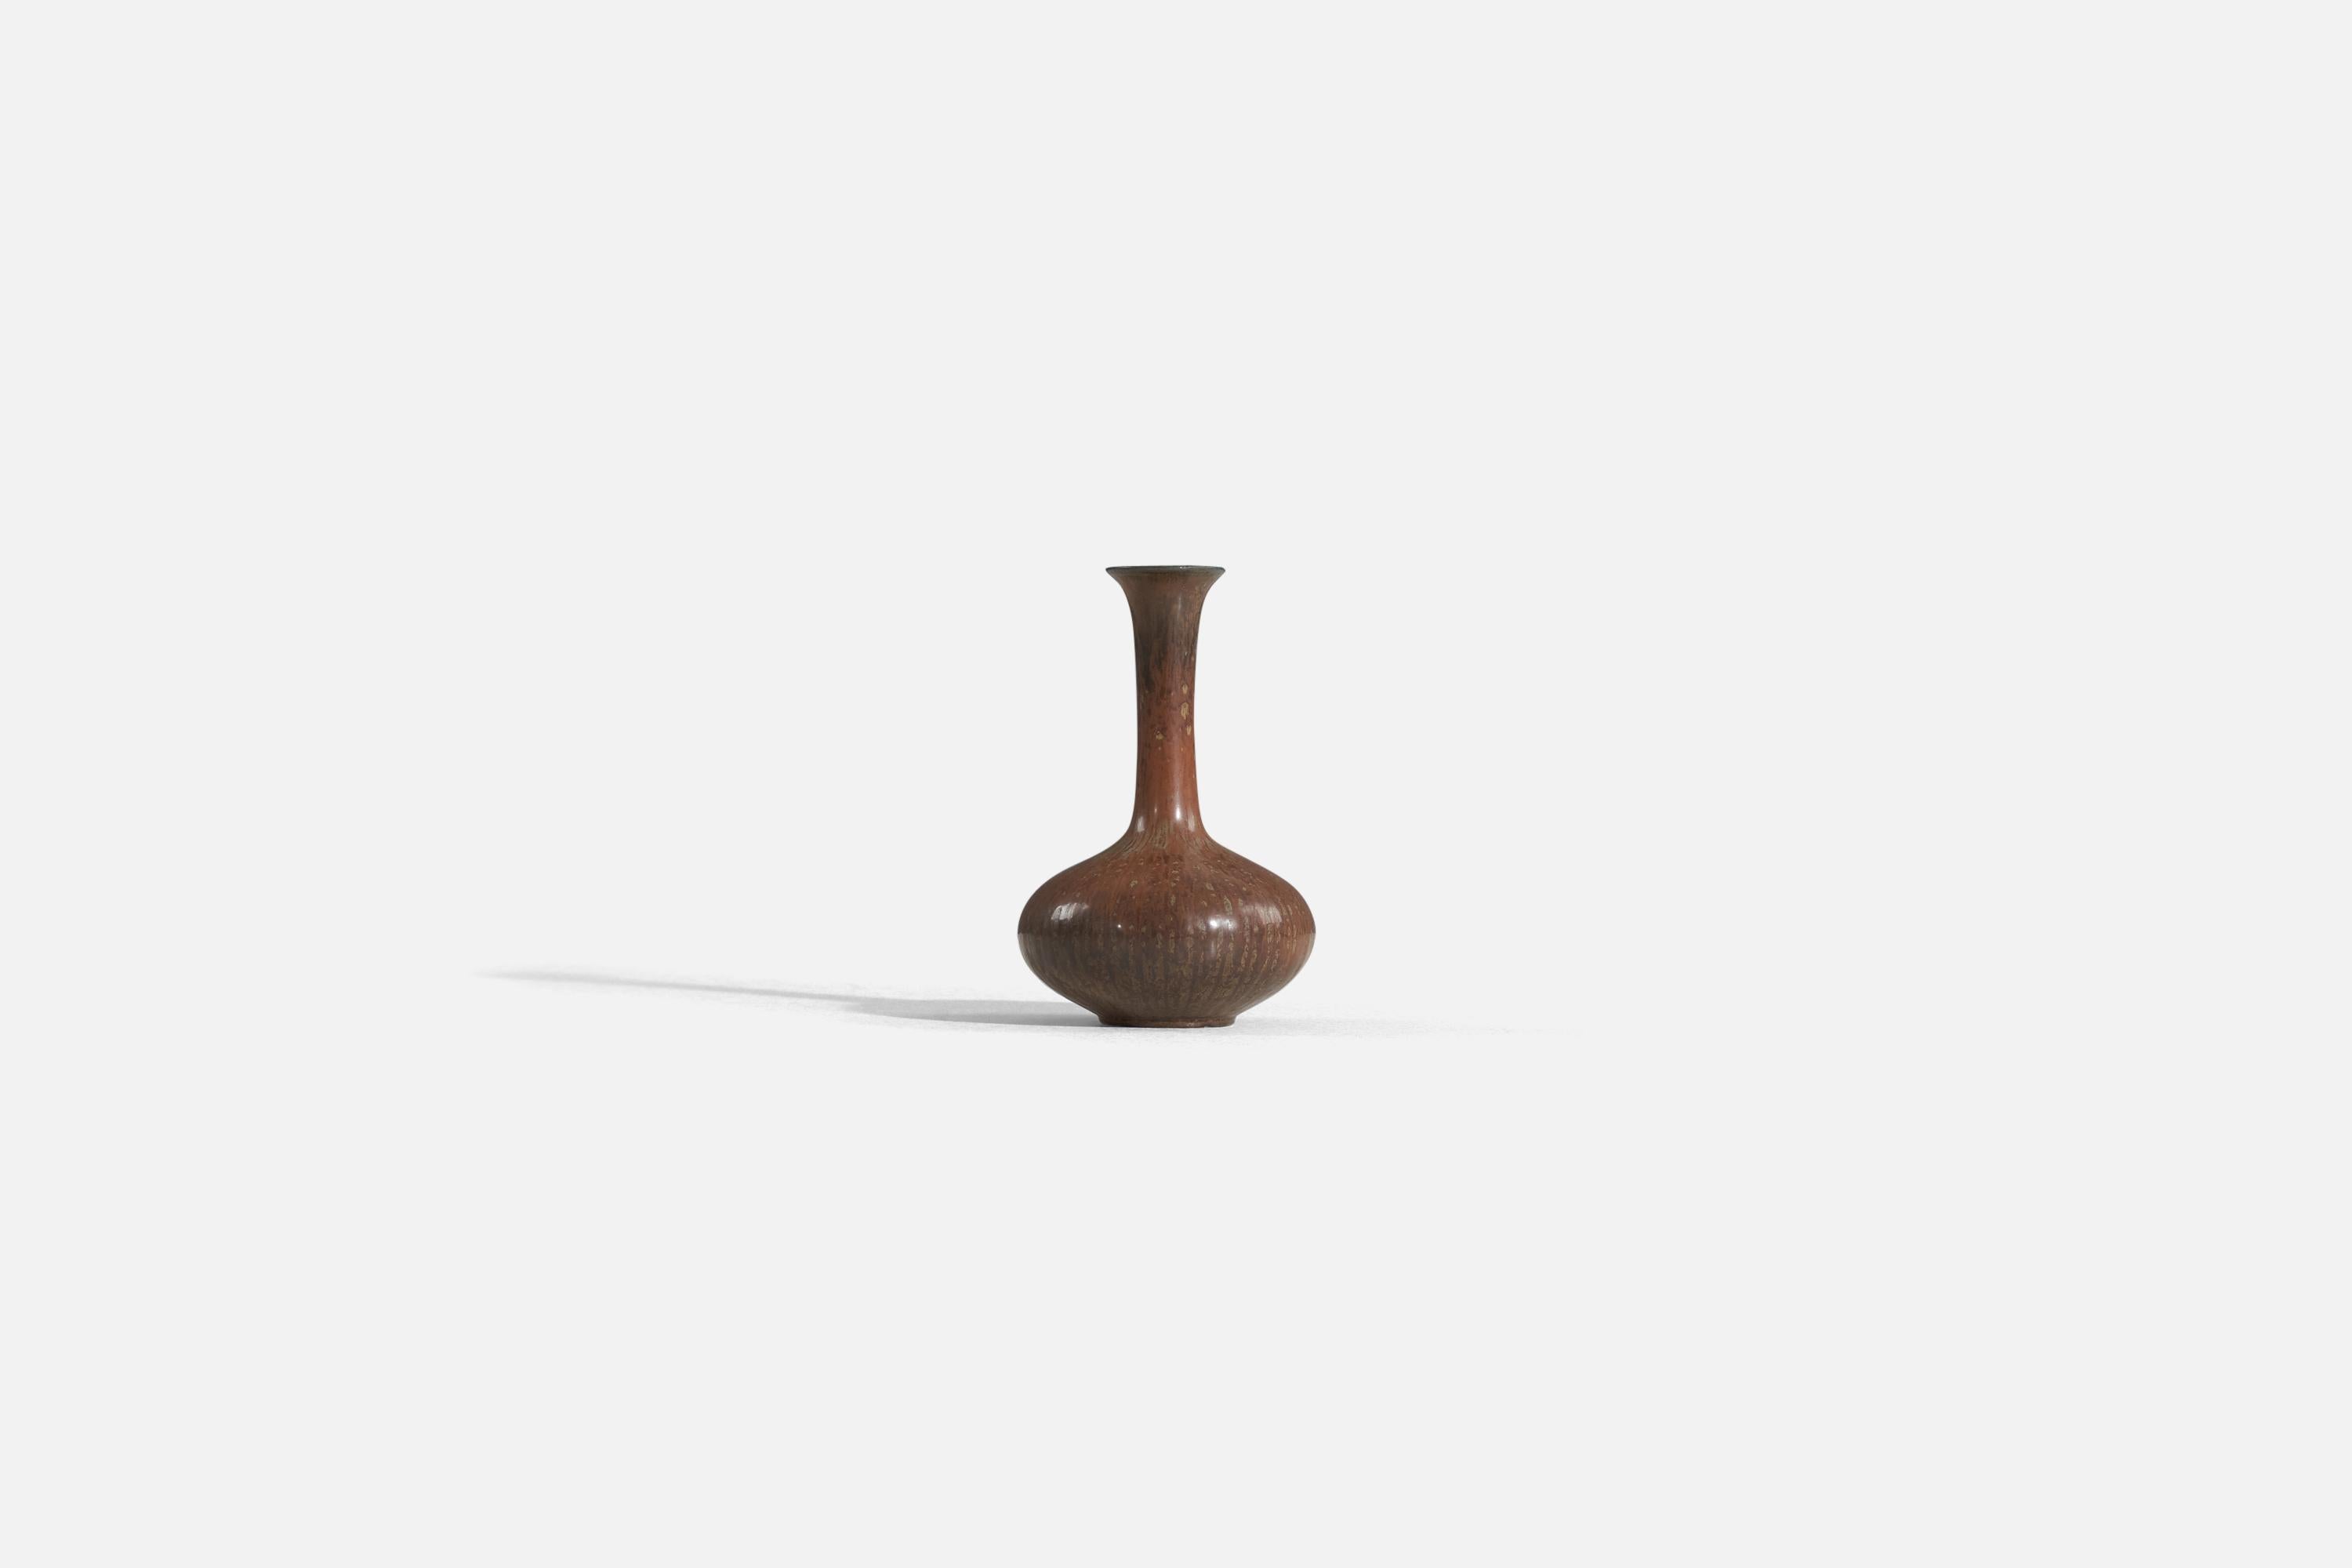 Un vase en grès émaillé brun conçu par Gunnar Nylund, produit par Rörstrand, Suède, années 1940. 

